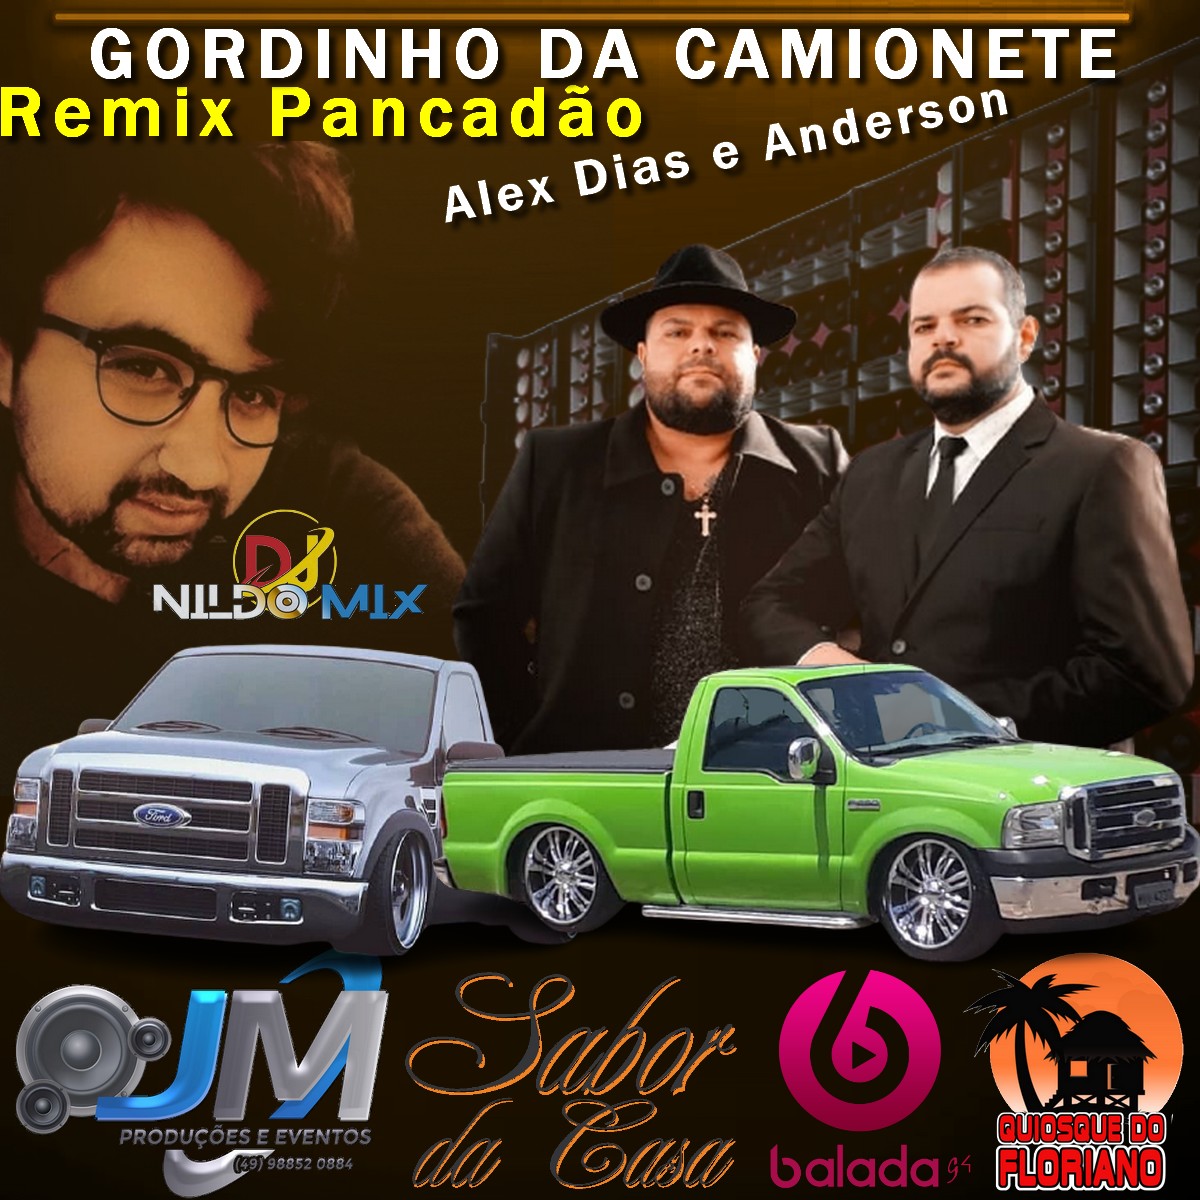 Alex Dias e Anderson e Dj Nildo Mix GORDINHO DA CAMIONETE Remix Pancadão